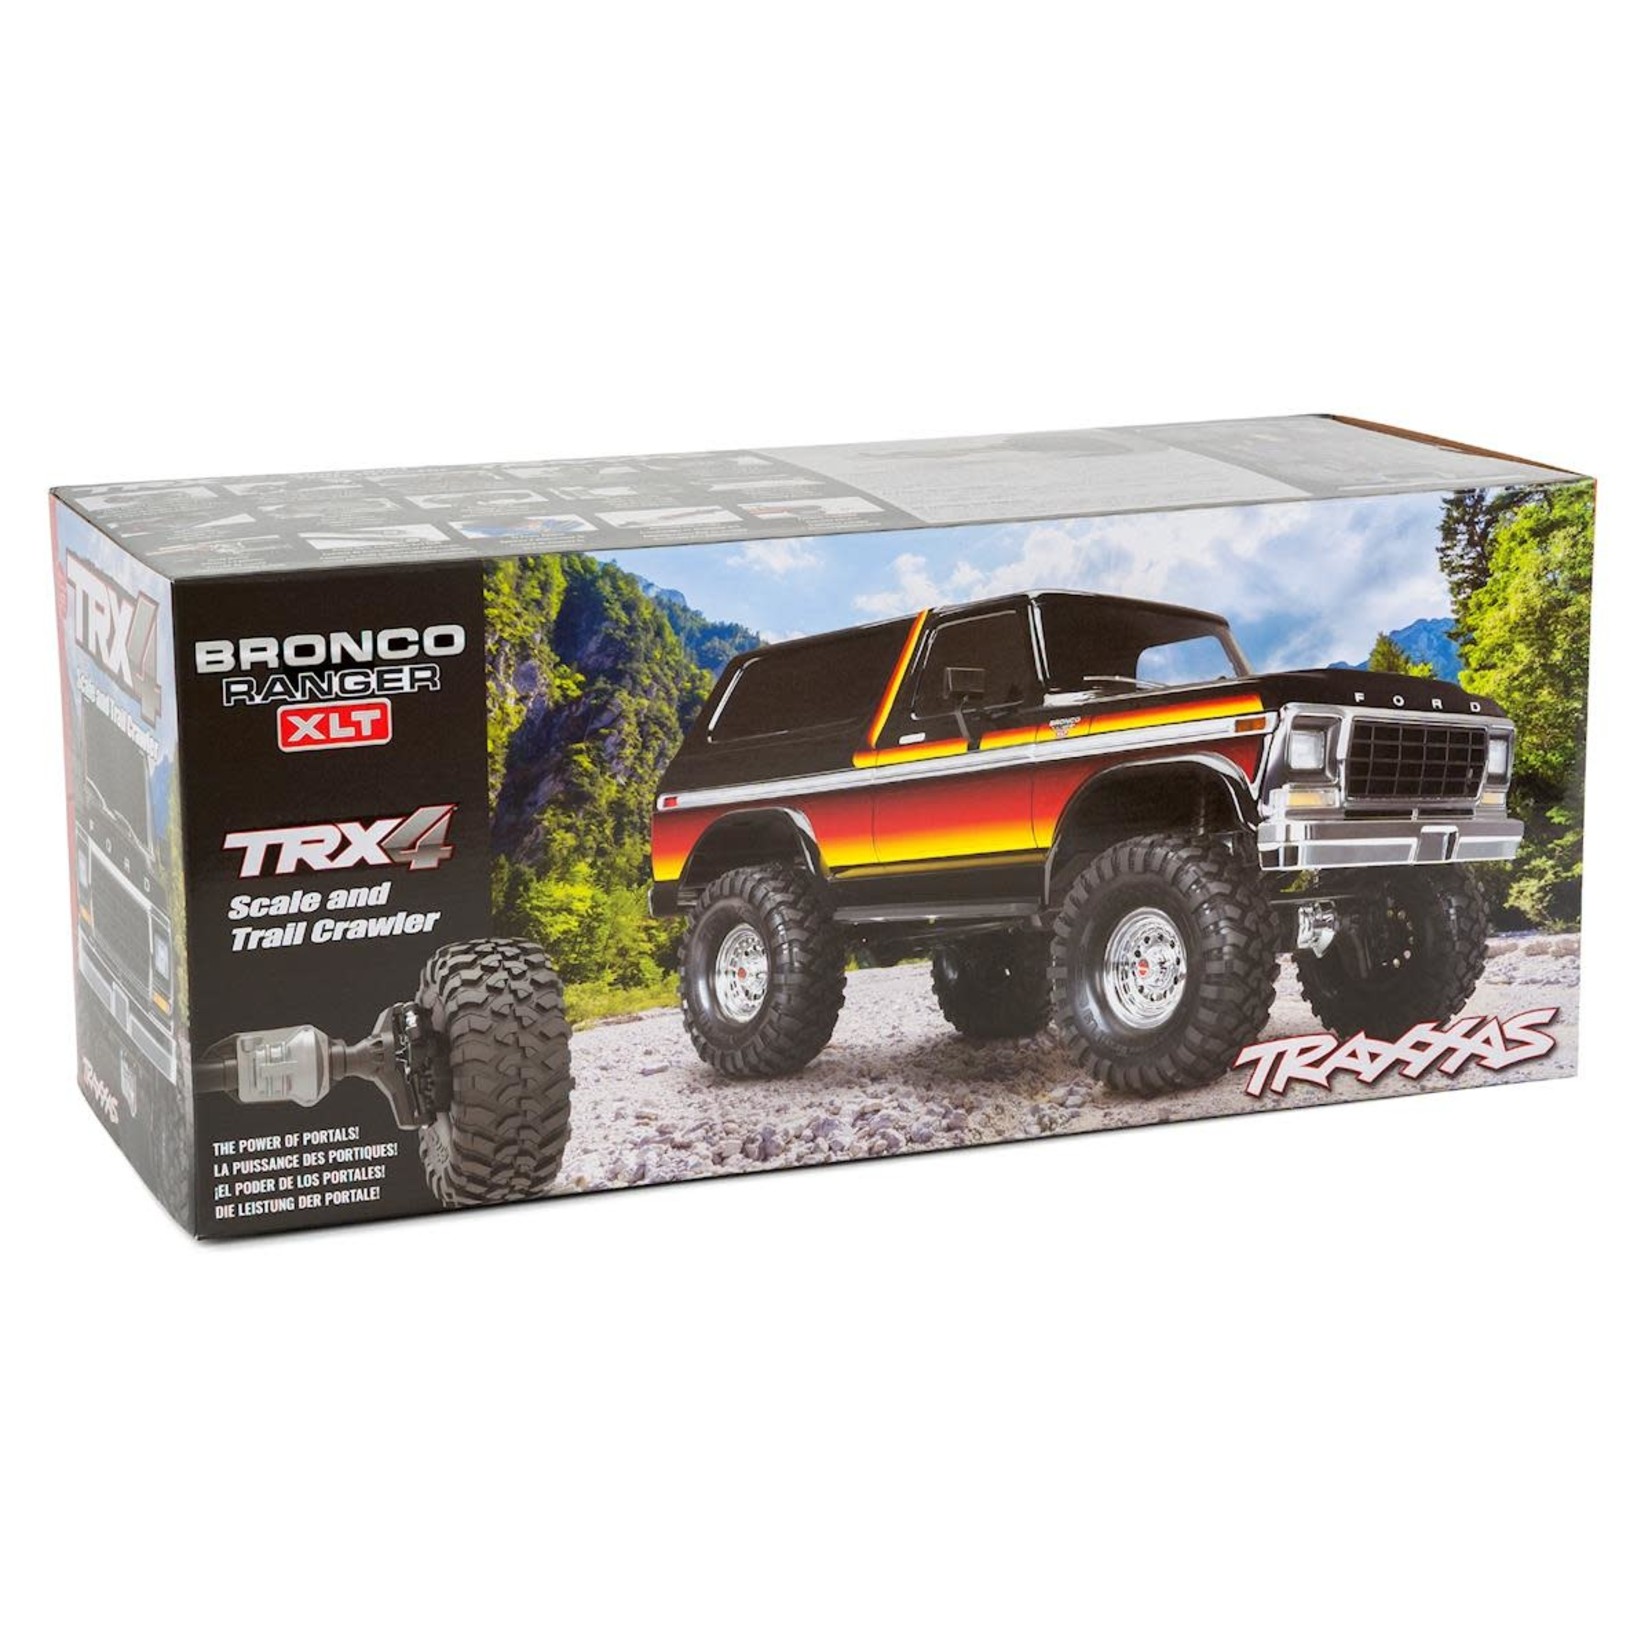 Traxxas Traxxas TRX-4 1/10 Trail Crawler Truck w/'79 Bronco Ranger XLT Body (Red) w/TQi 2.4GHz Radio #82046-4-RED